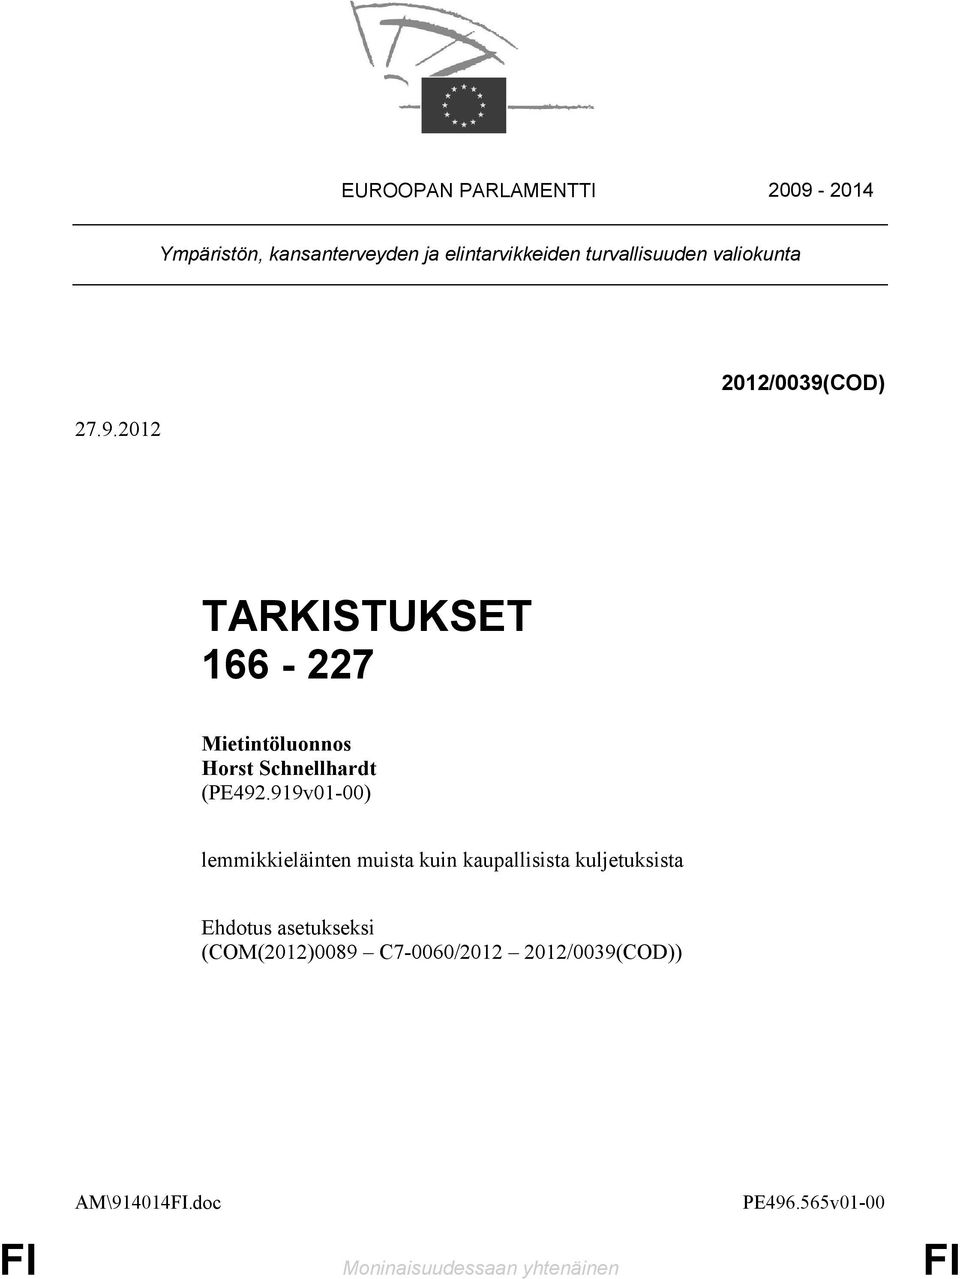 2012 2012/0039(COD) TARKISTUKSET 166-227 Mietintöluonnos Horst Schnellhardt (PE492.